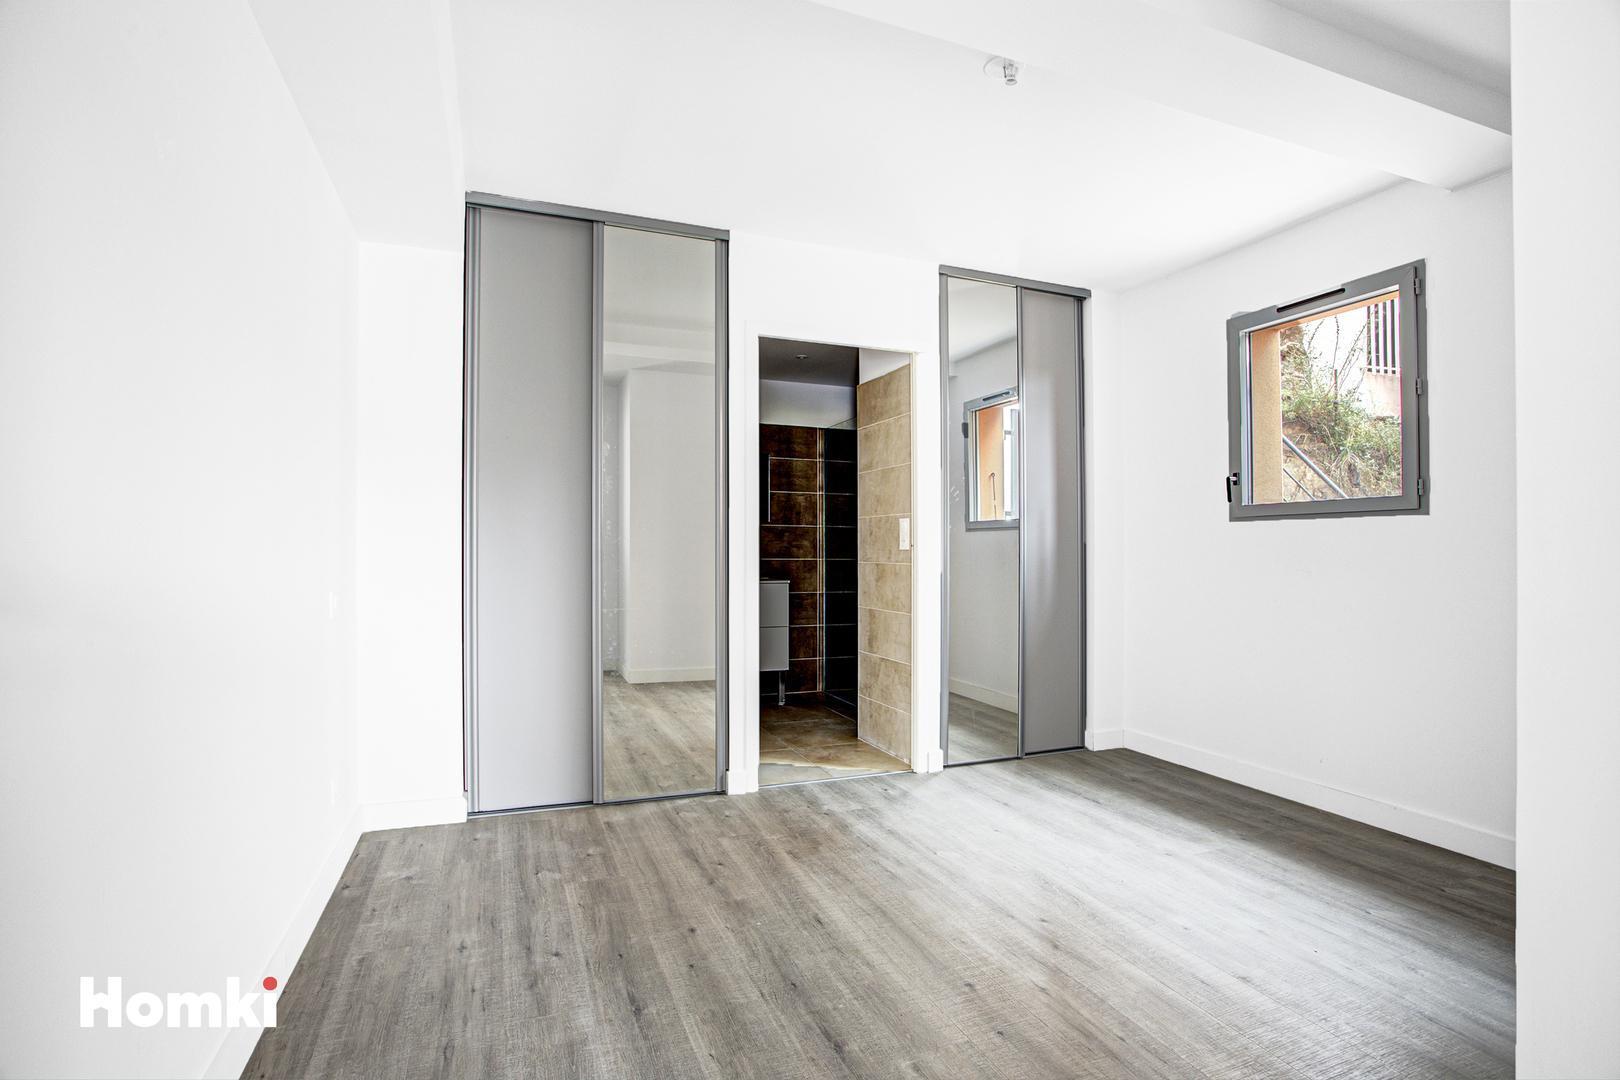 Homki - Vente Appartement  de 82.0 m² à Collioure 66190